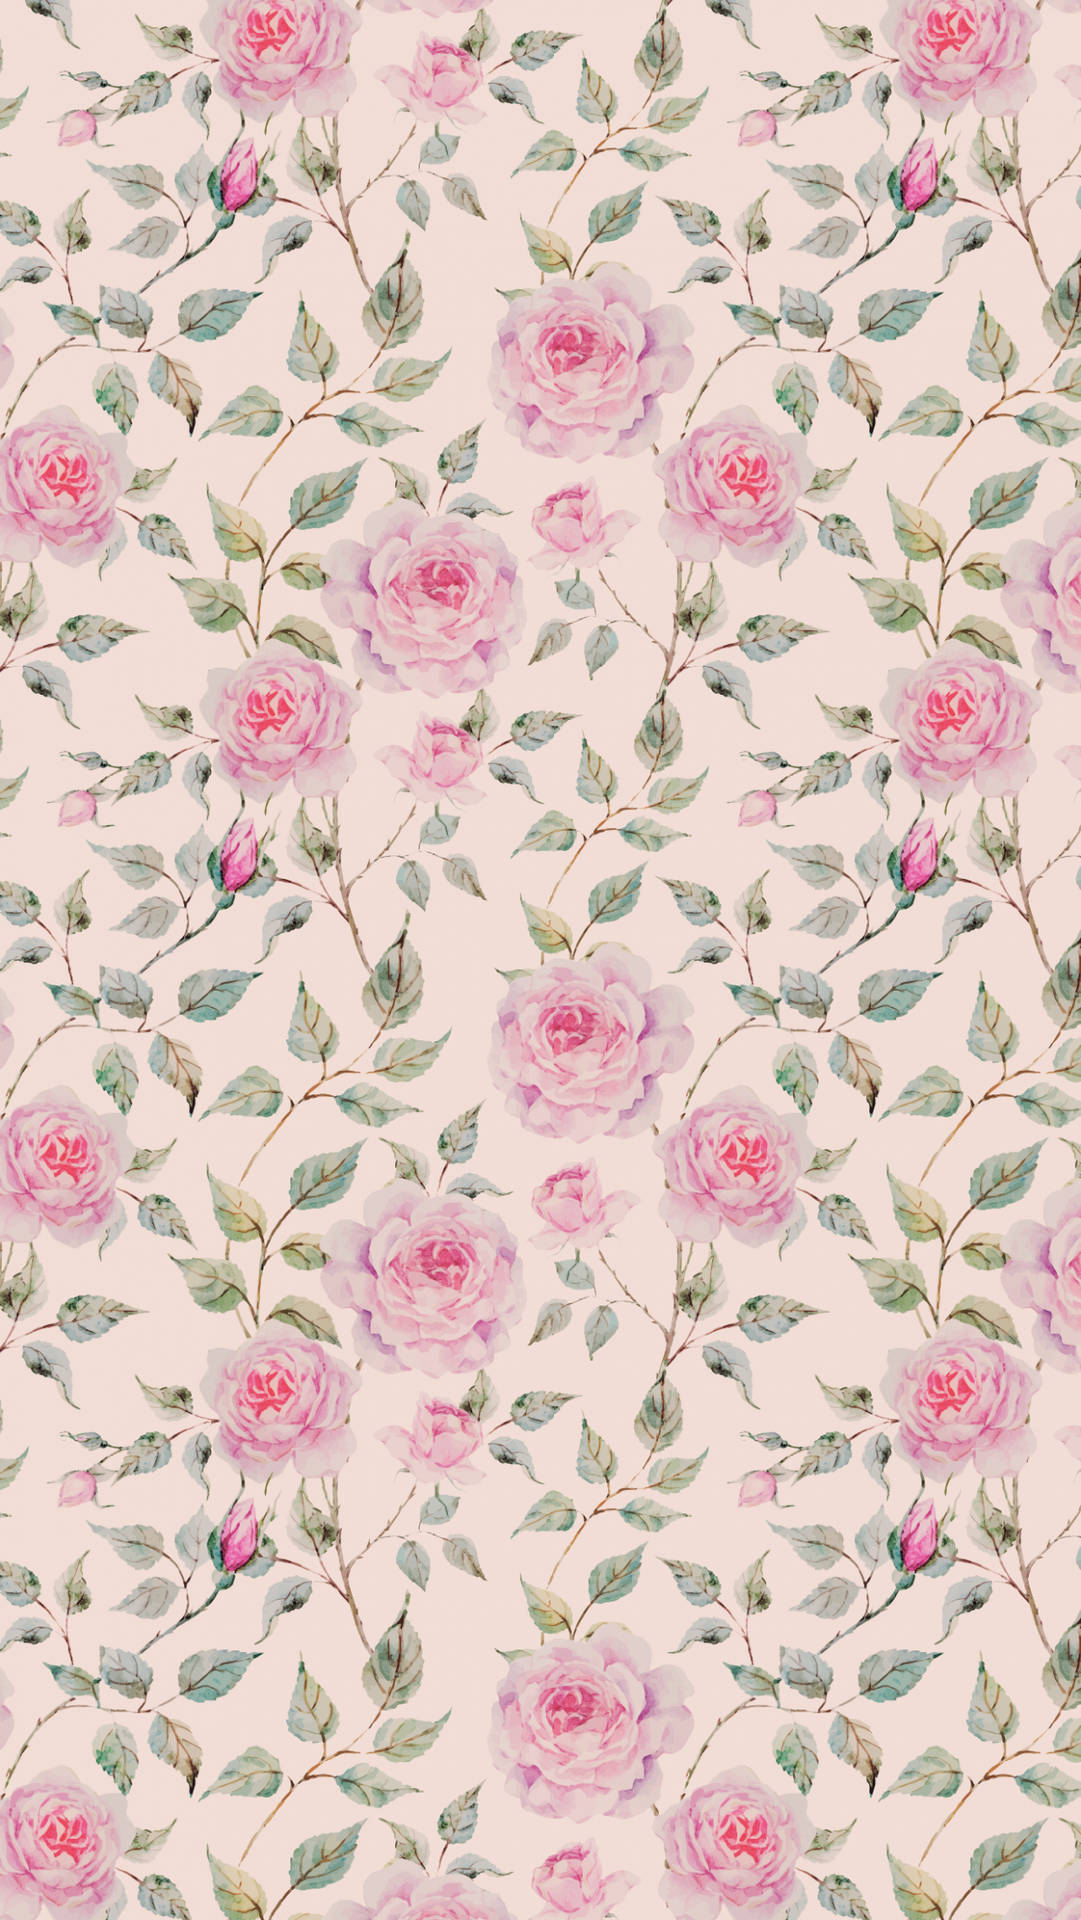 Fondode Pantalla De Rosas Rosadas De Tela Por Sarah_sass En Spoonflower - Tela Personalizada. Fondo de pantalla